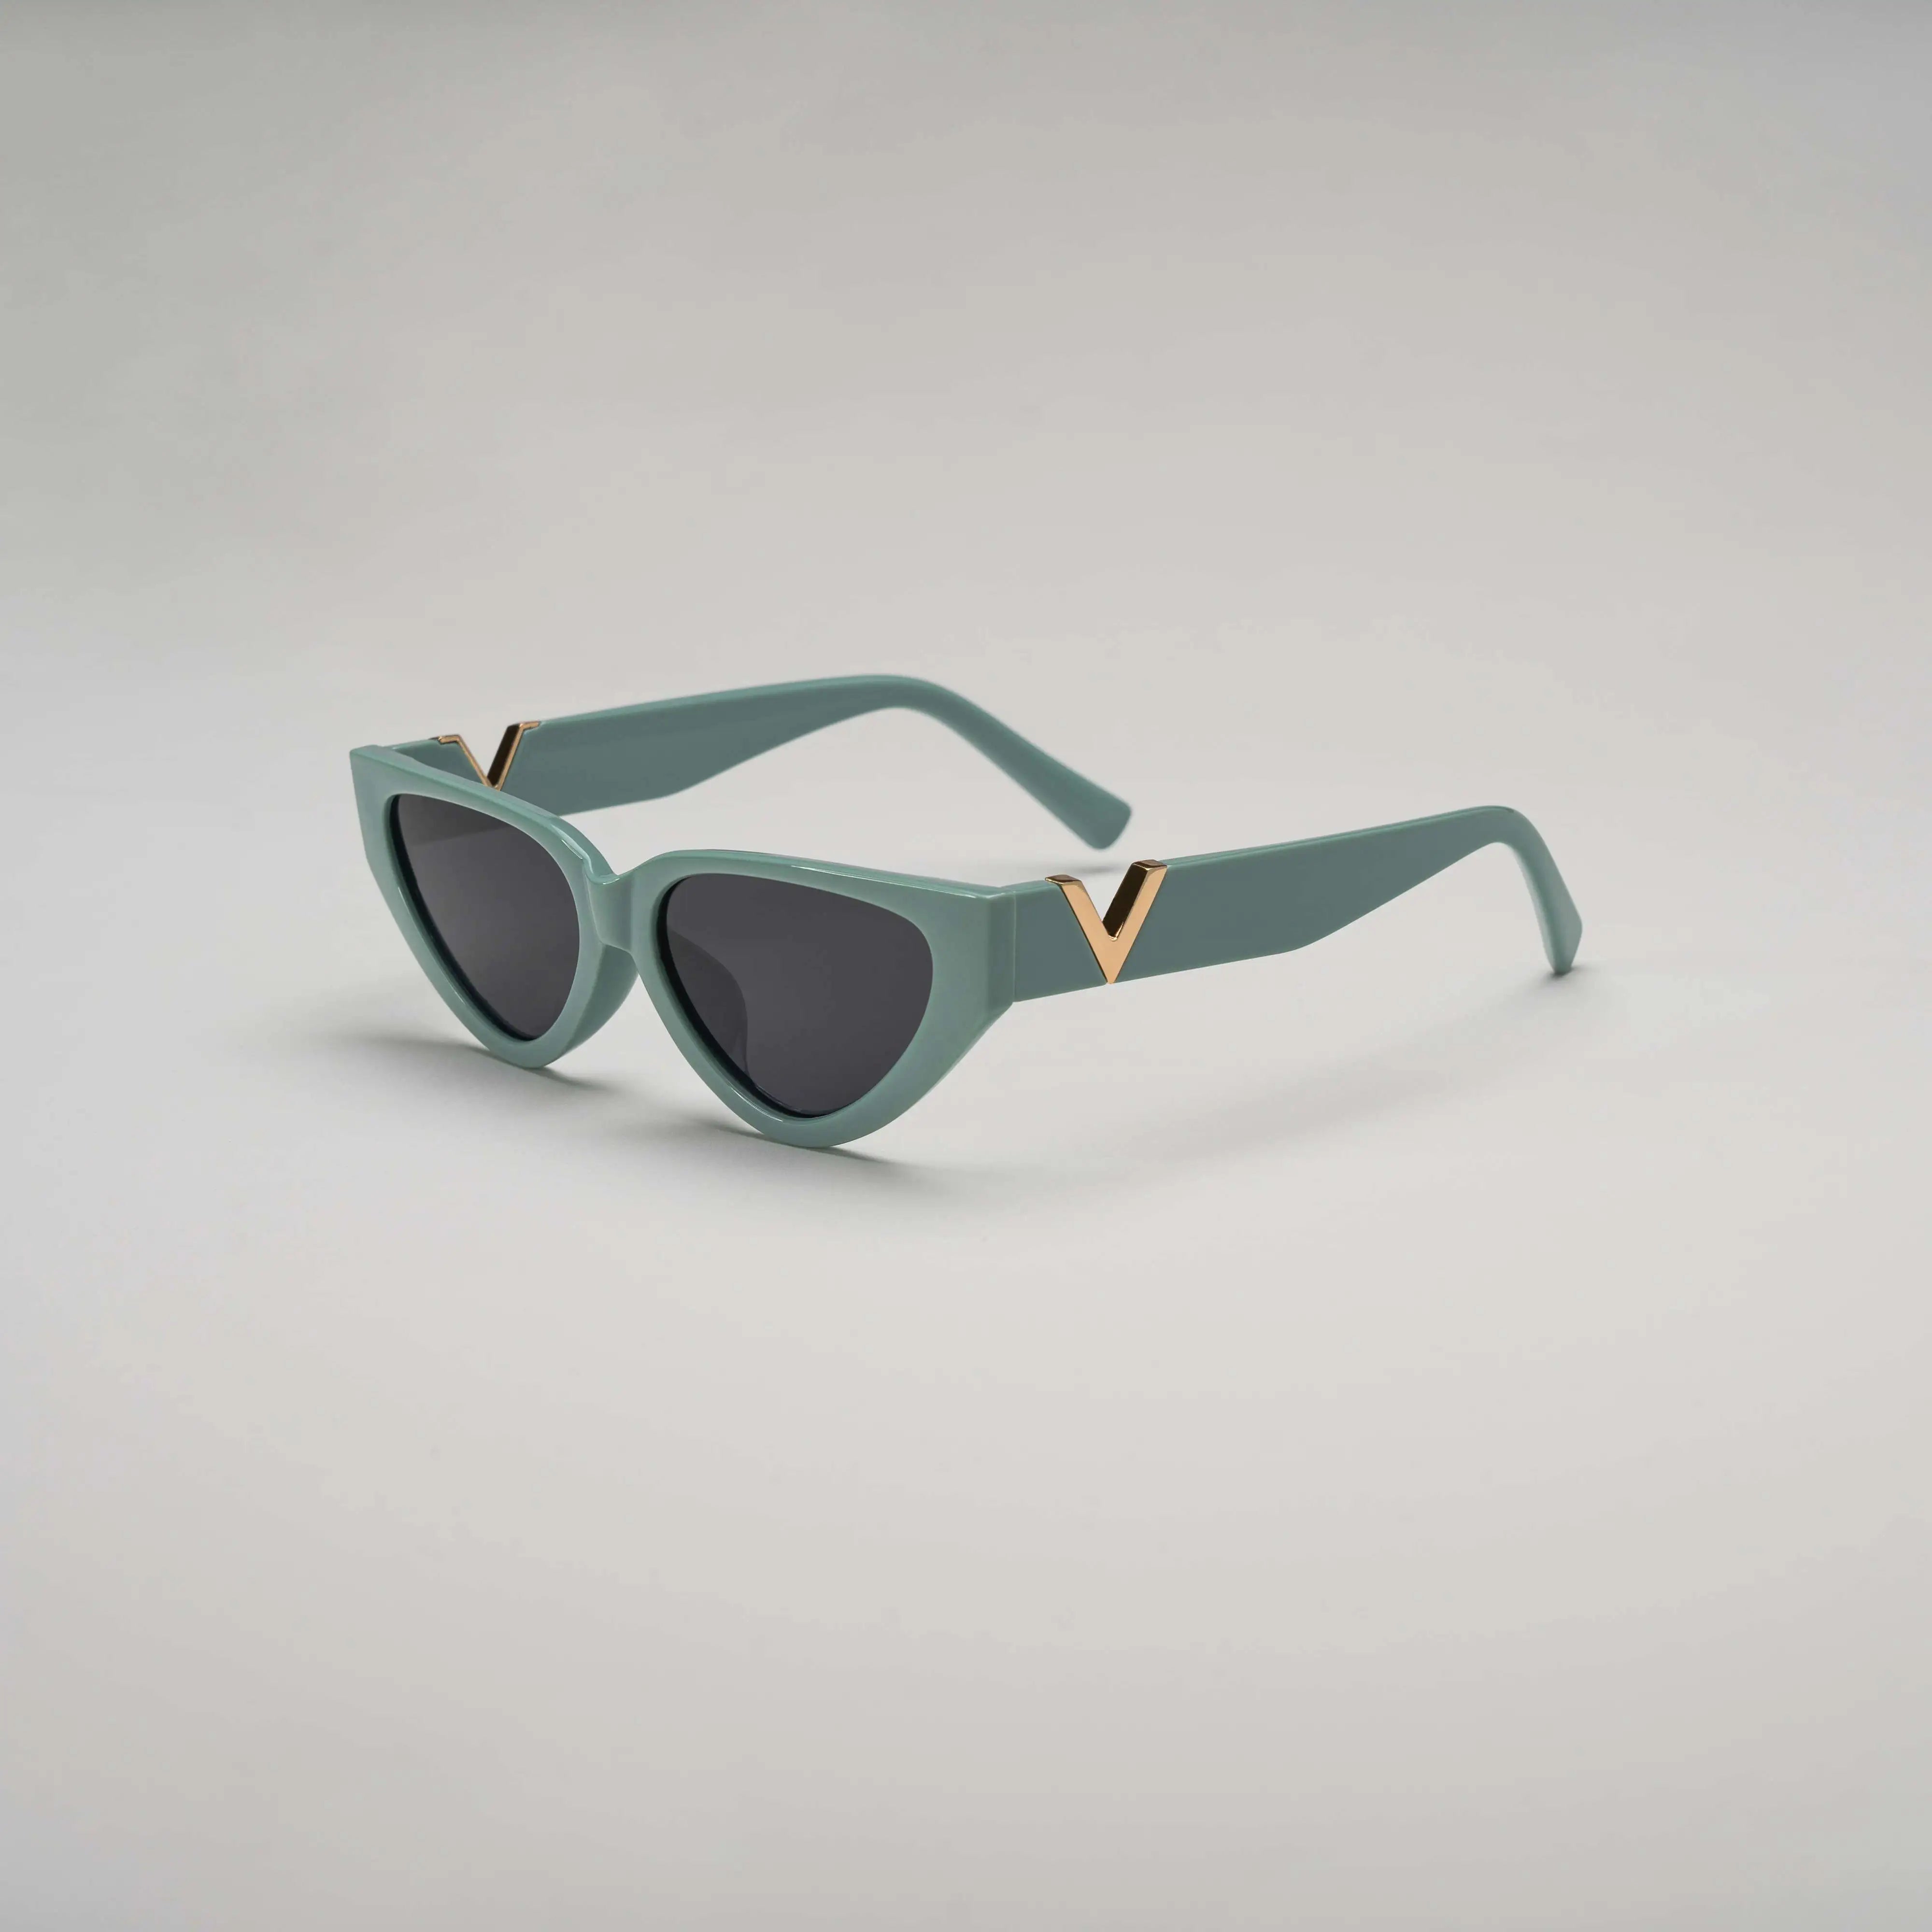 'Venice' Retro Sunglasses in Turquoise 